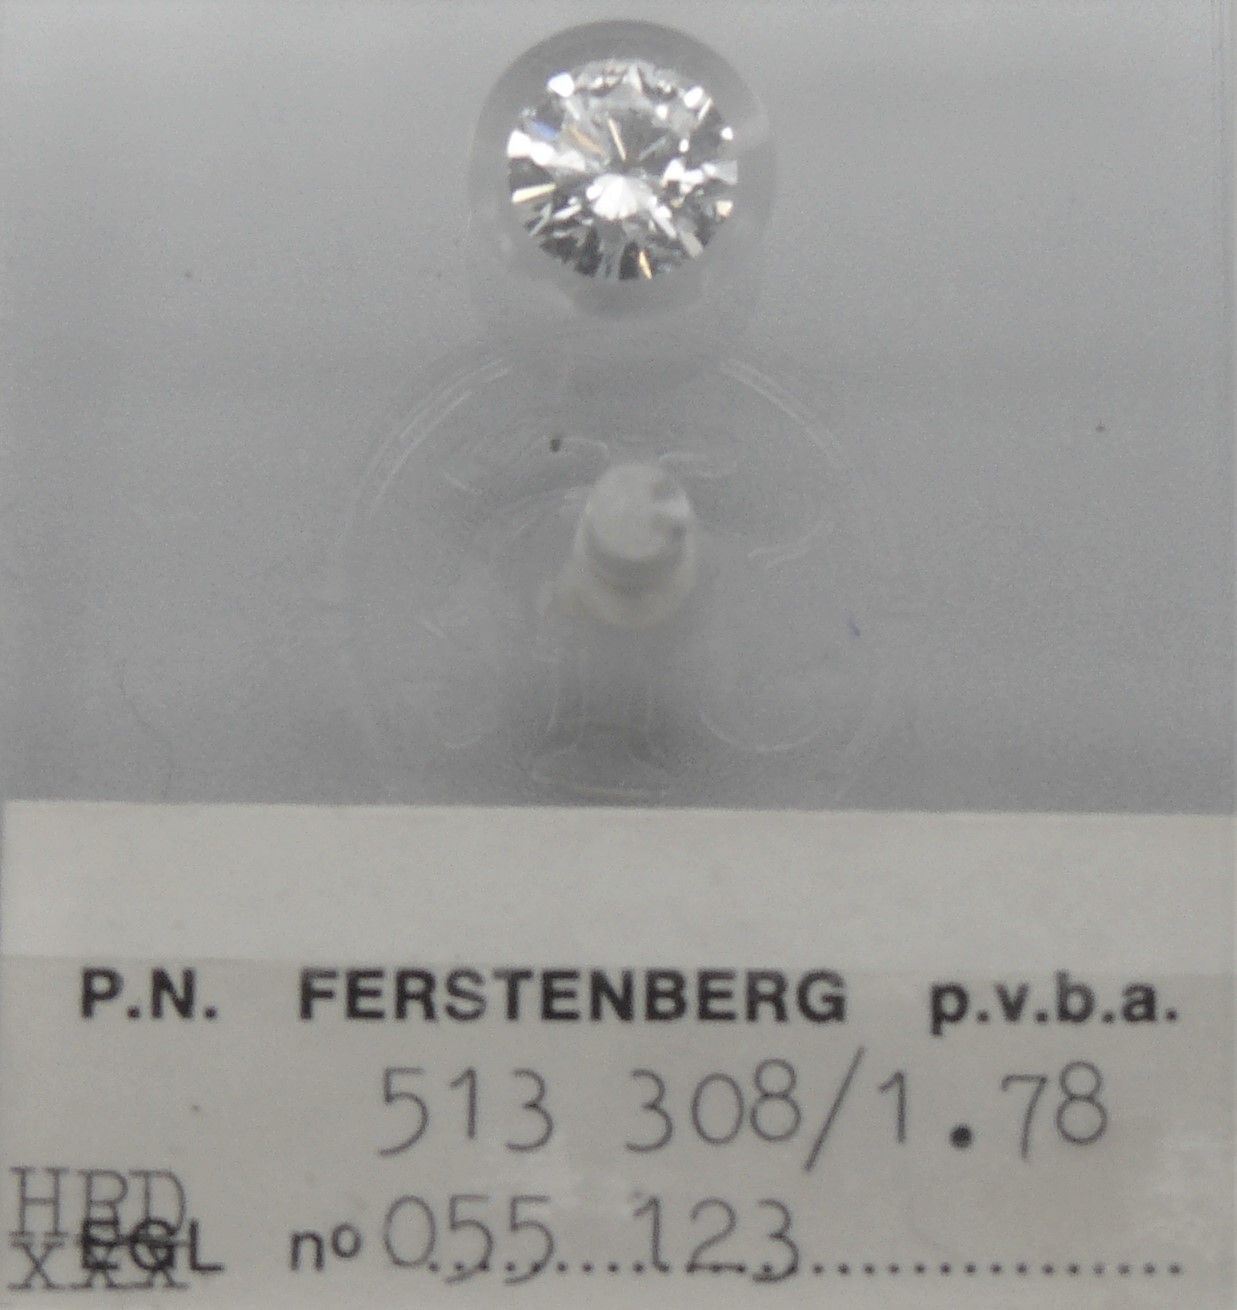 FERSTENBERG un diamante n. 513 308, sotto sigillo: peso 1,78 carati, taglio roto&hellip;